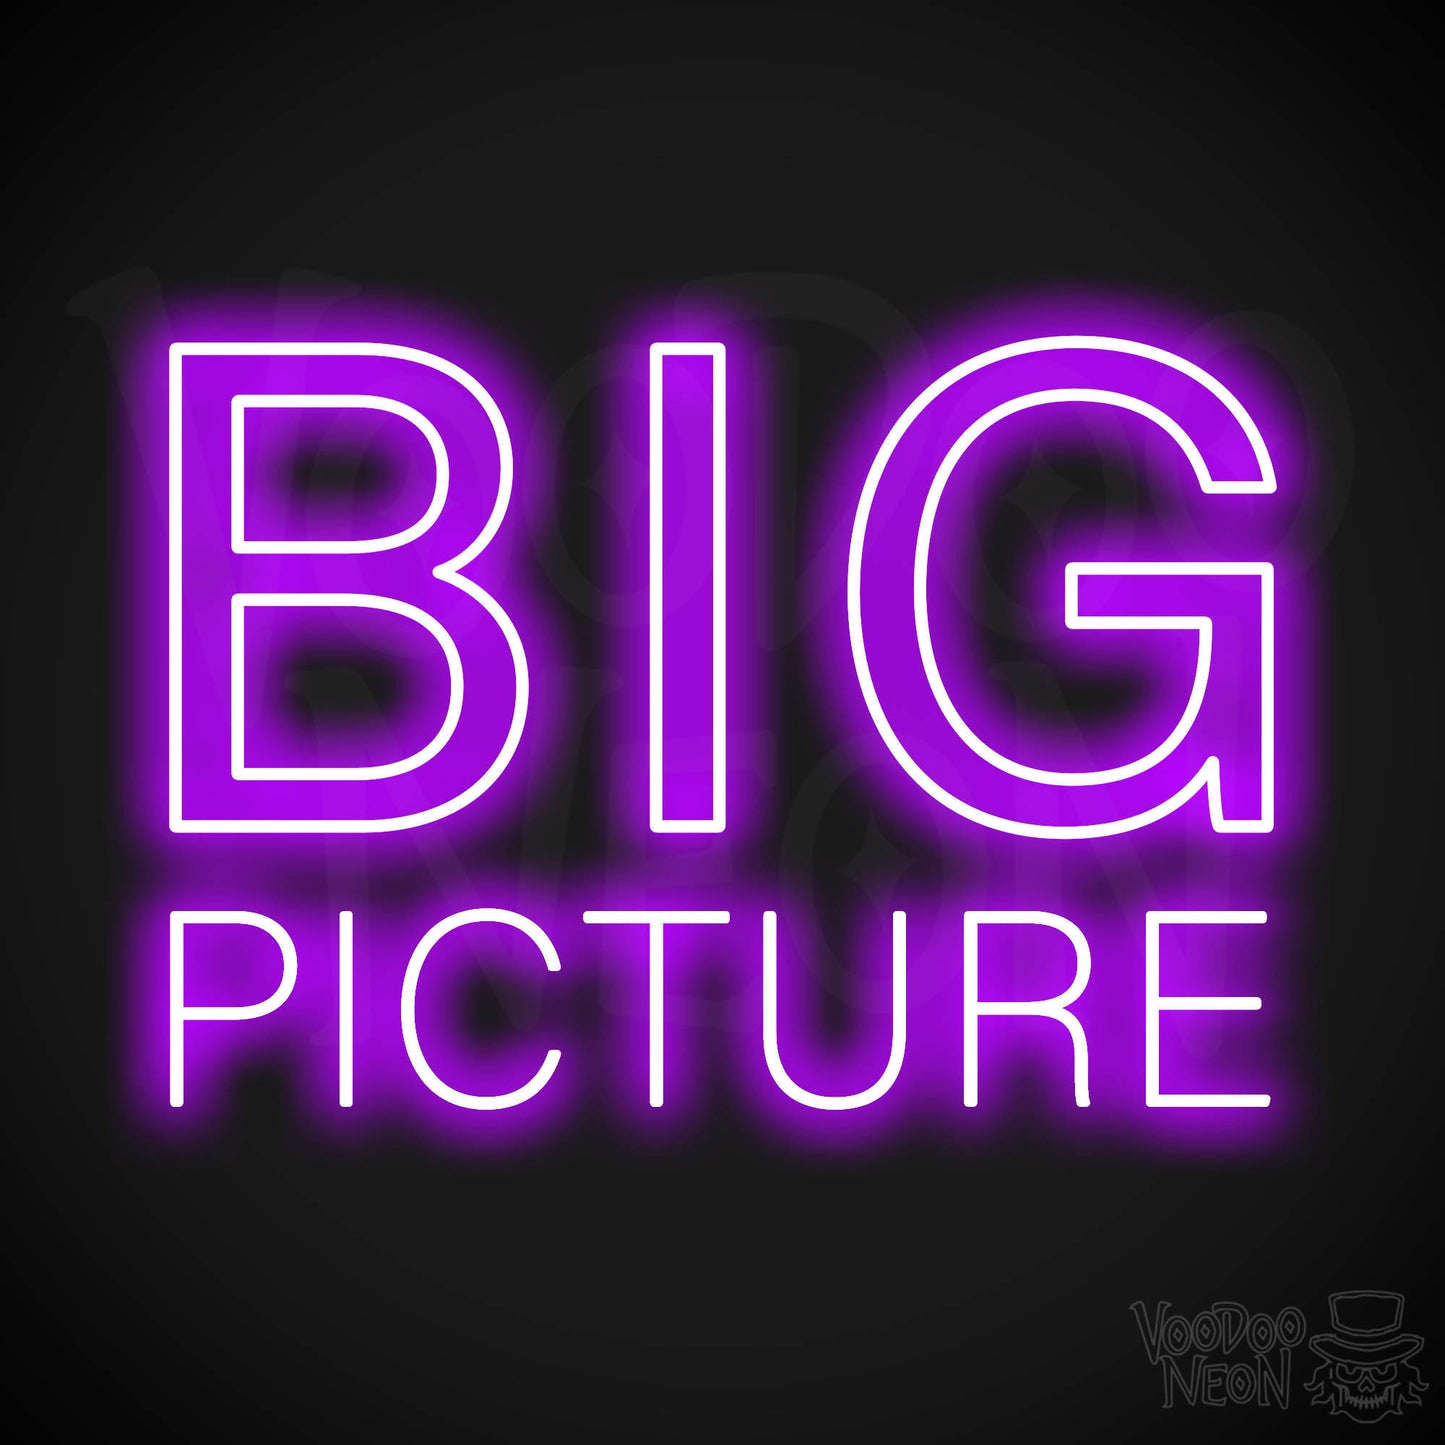 Big Picture LED Neon - Purple